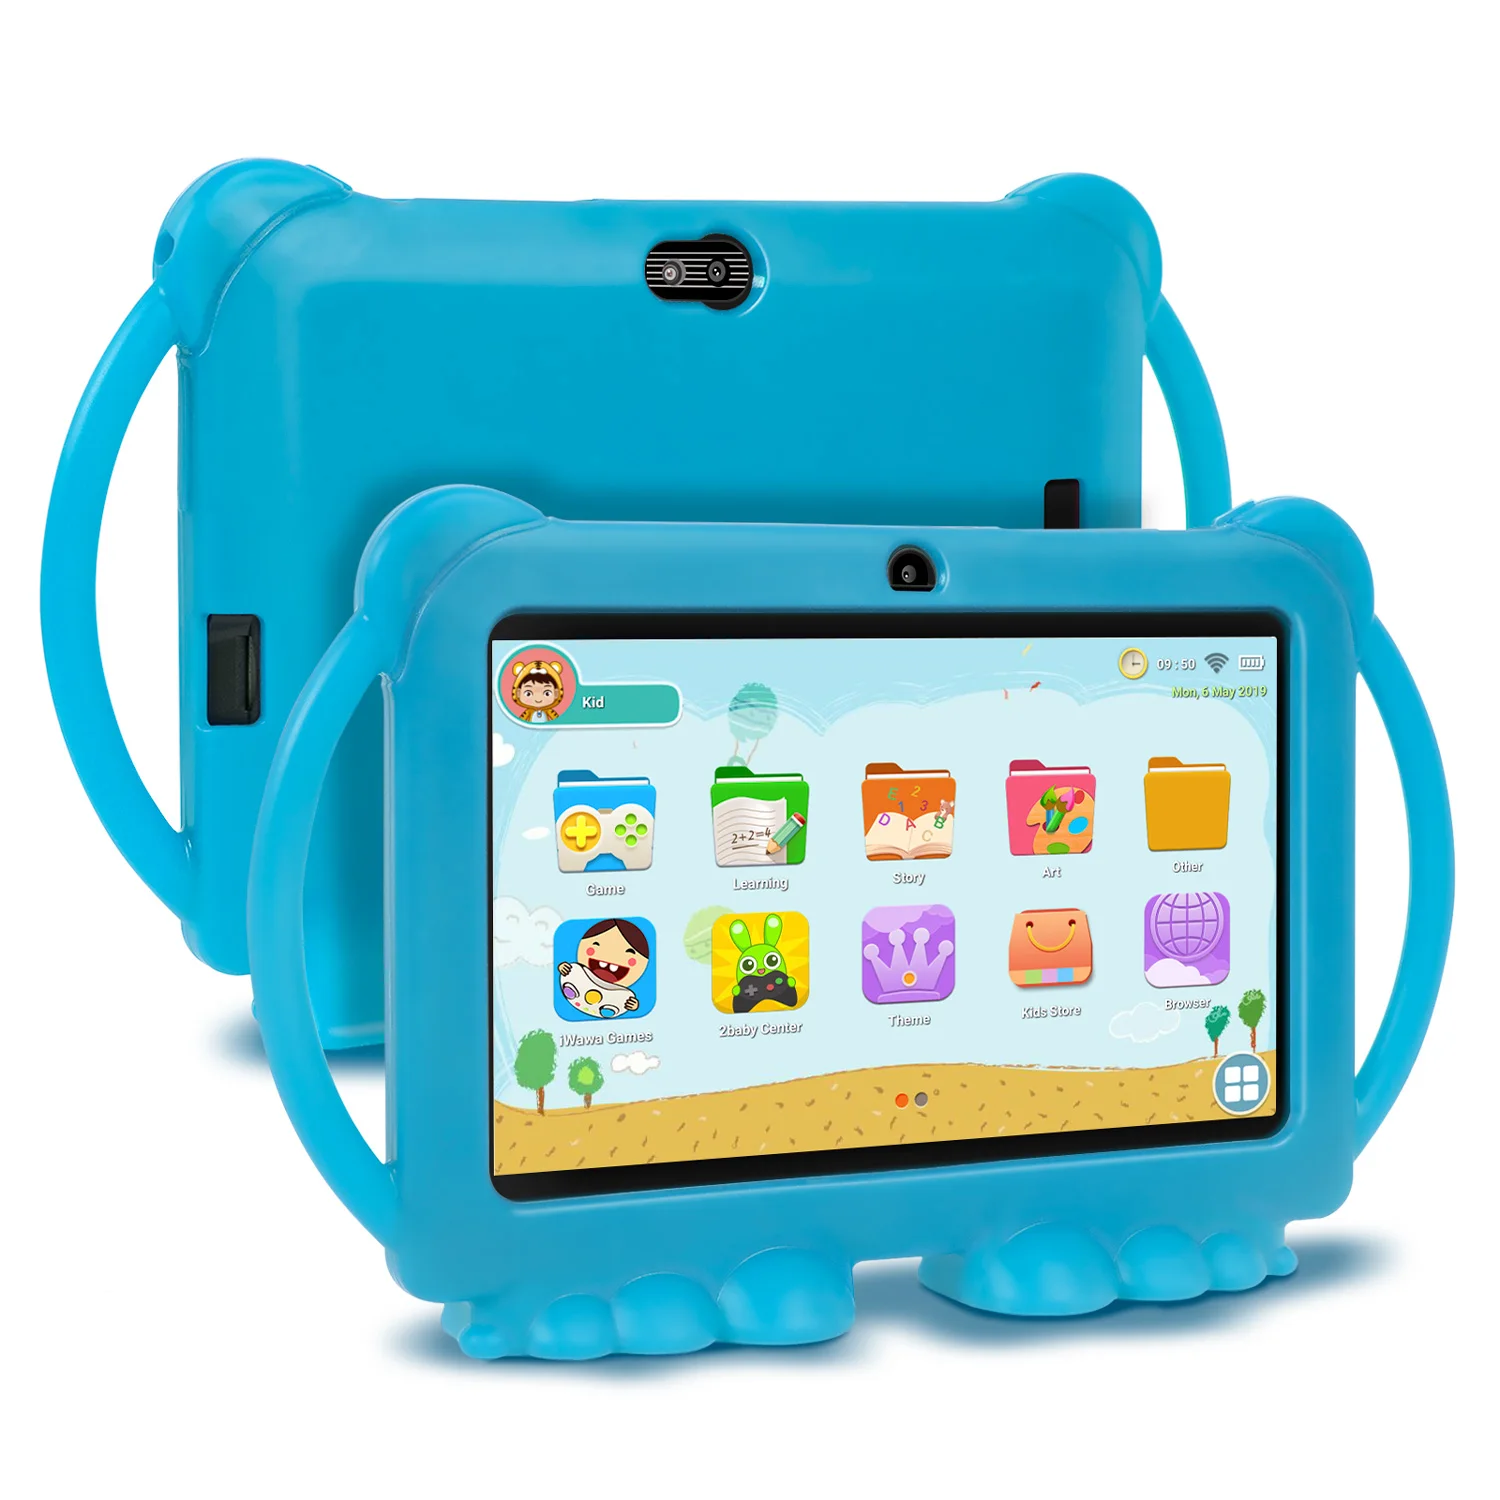 XGODY детский Обучающий планшет, рождественский подарок, детский планшет, 7 дюймов, HD, силиконовый чехол, USB зарядка, четырехъядерный, 1 ГБ, 16 ГБ - Комплект: Tablet and blue